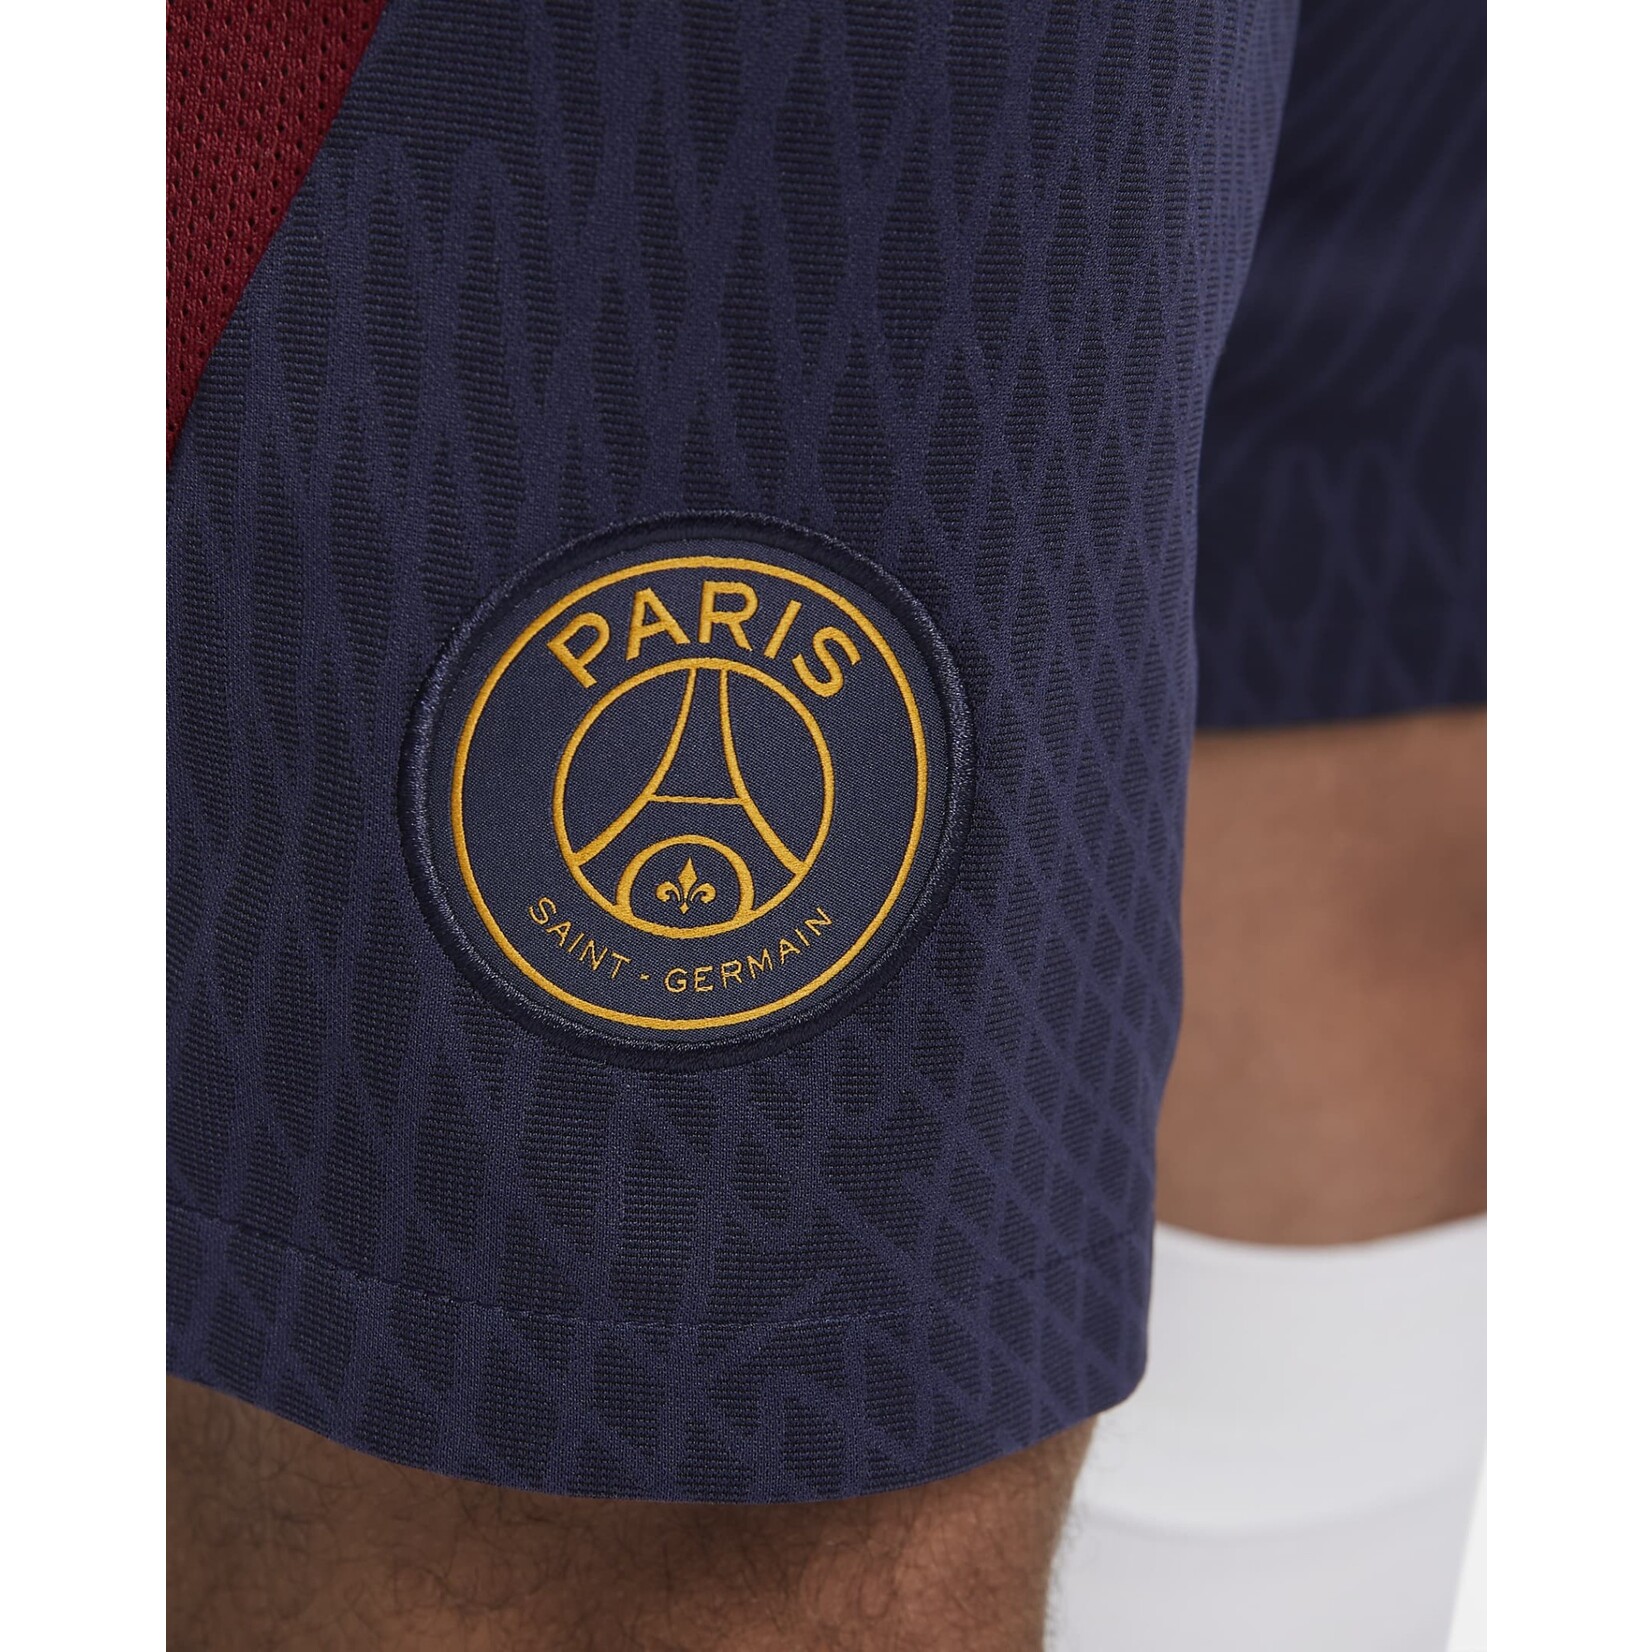 Nike Paris Saint-Germain Strike Men's Nike Dri-FIT Knit Soccer Shorts